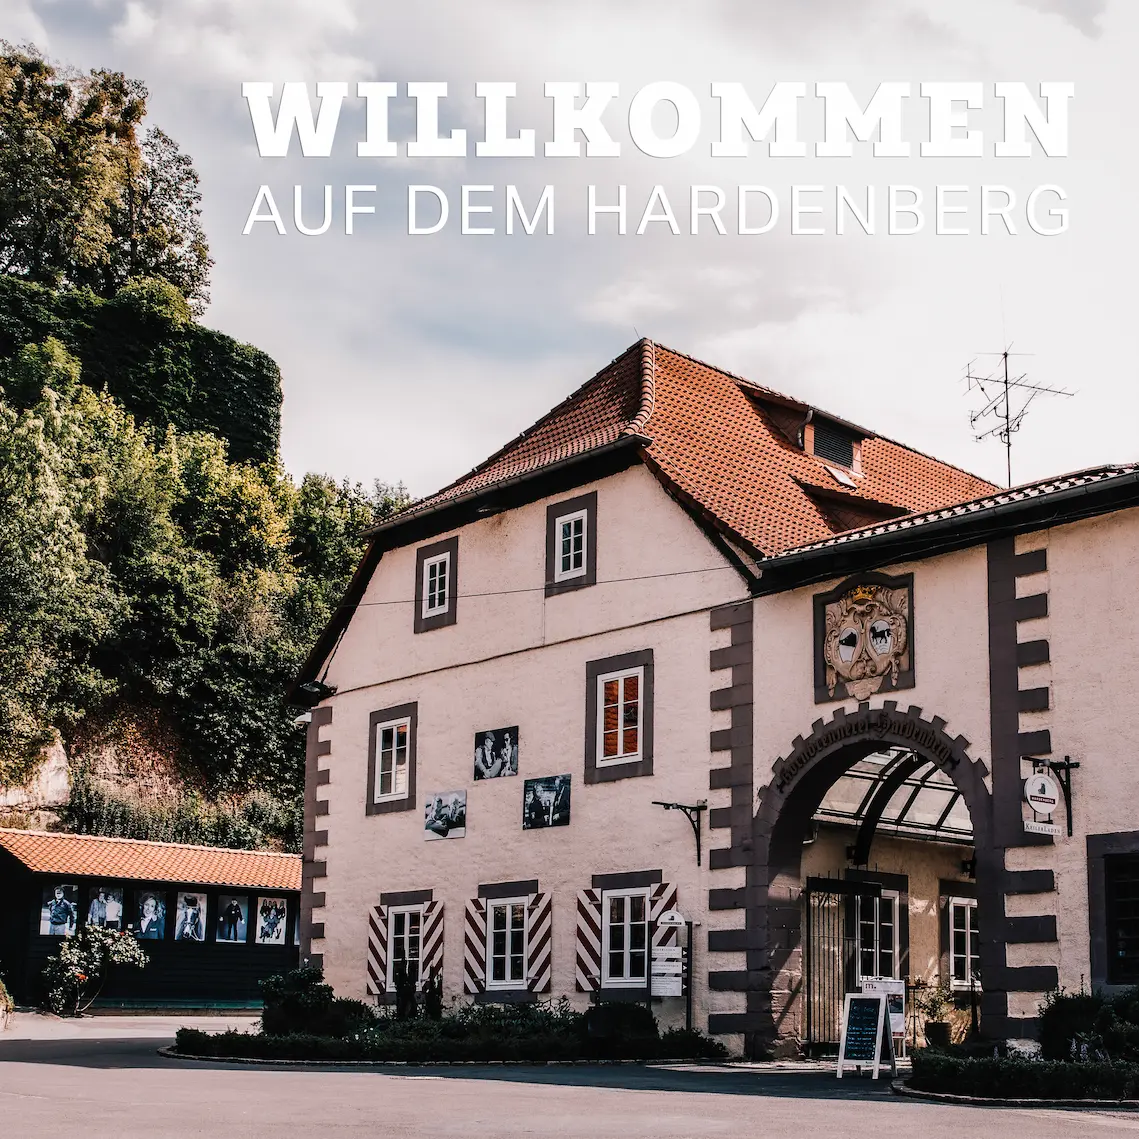 Hardenberg Wilthen - Willkommen auf dem Hardenberg